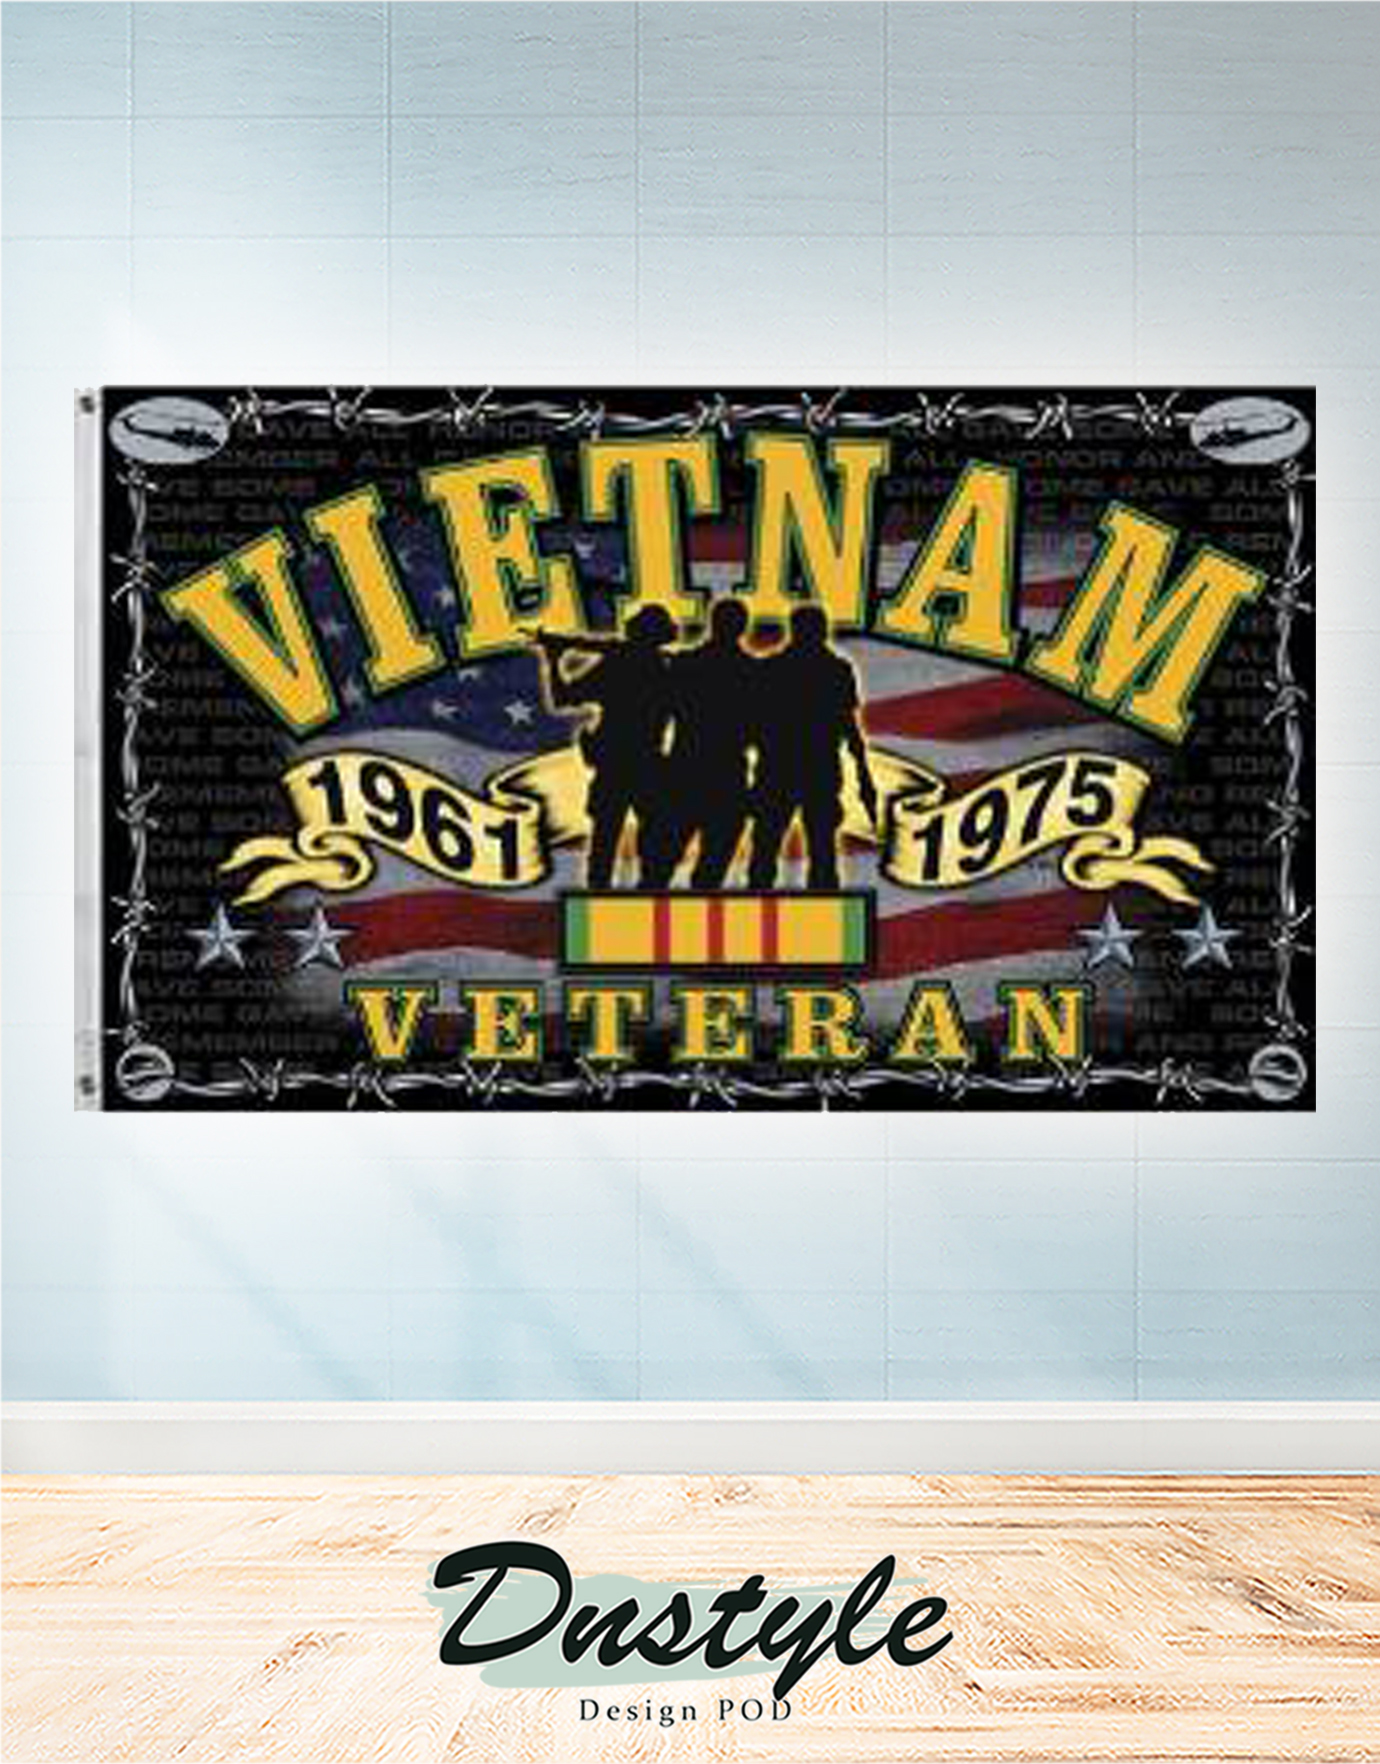 Vietnam veteran memorial flag 1